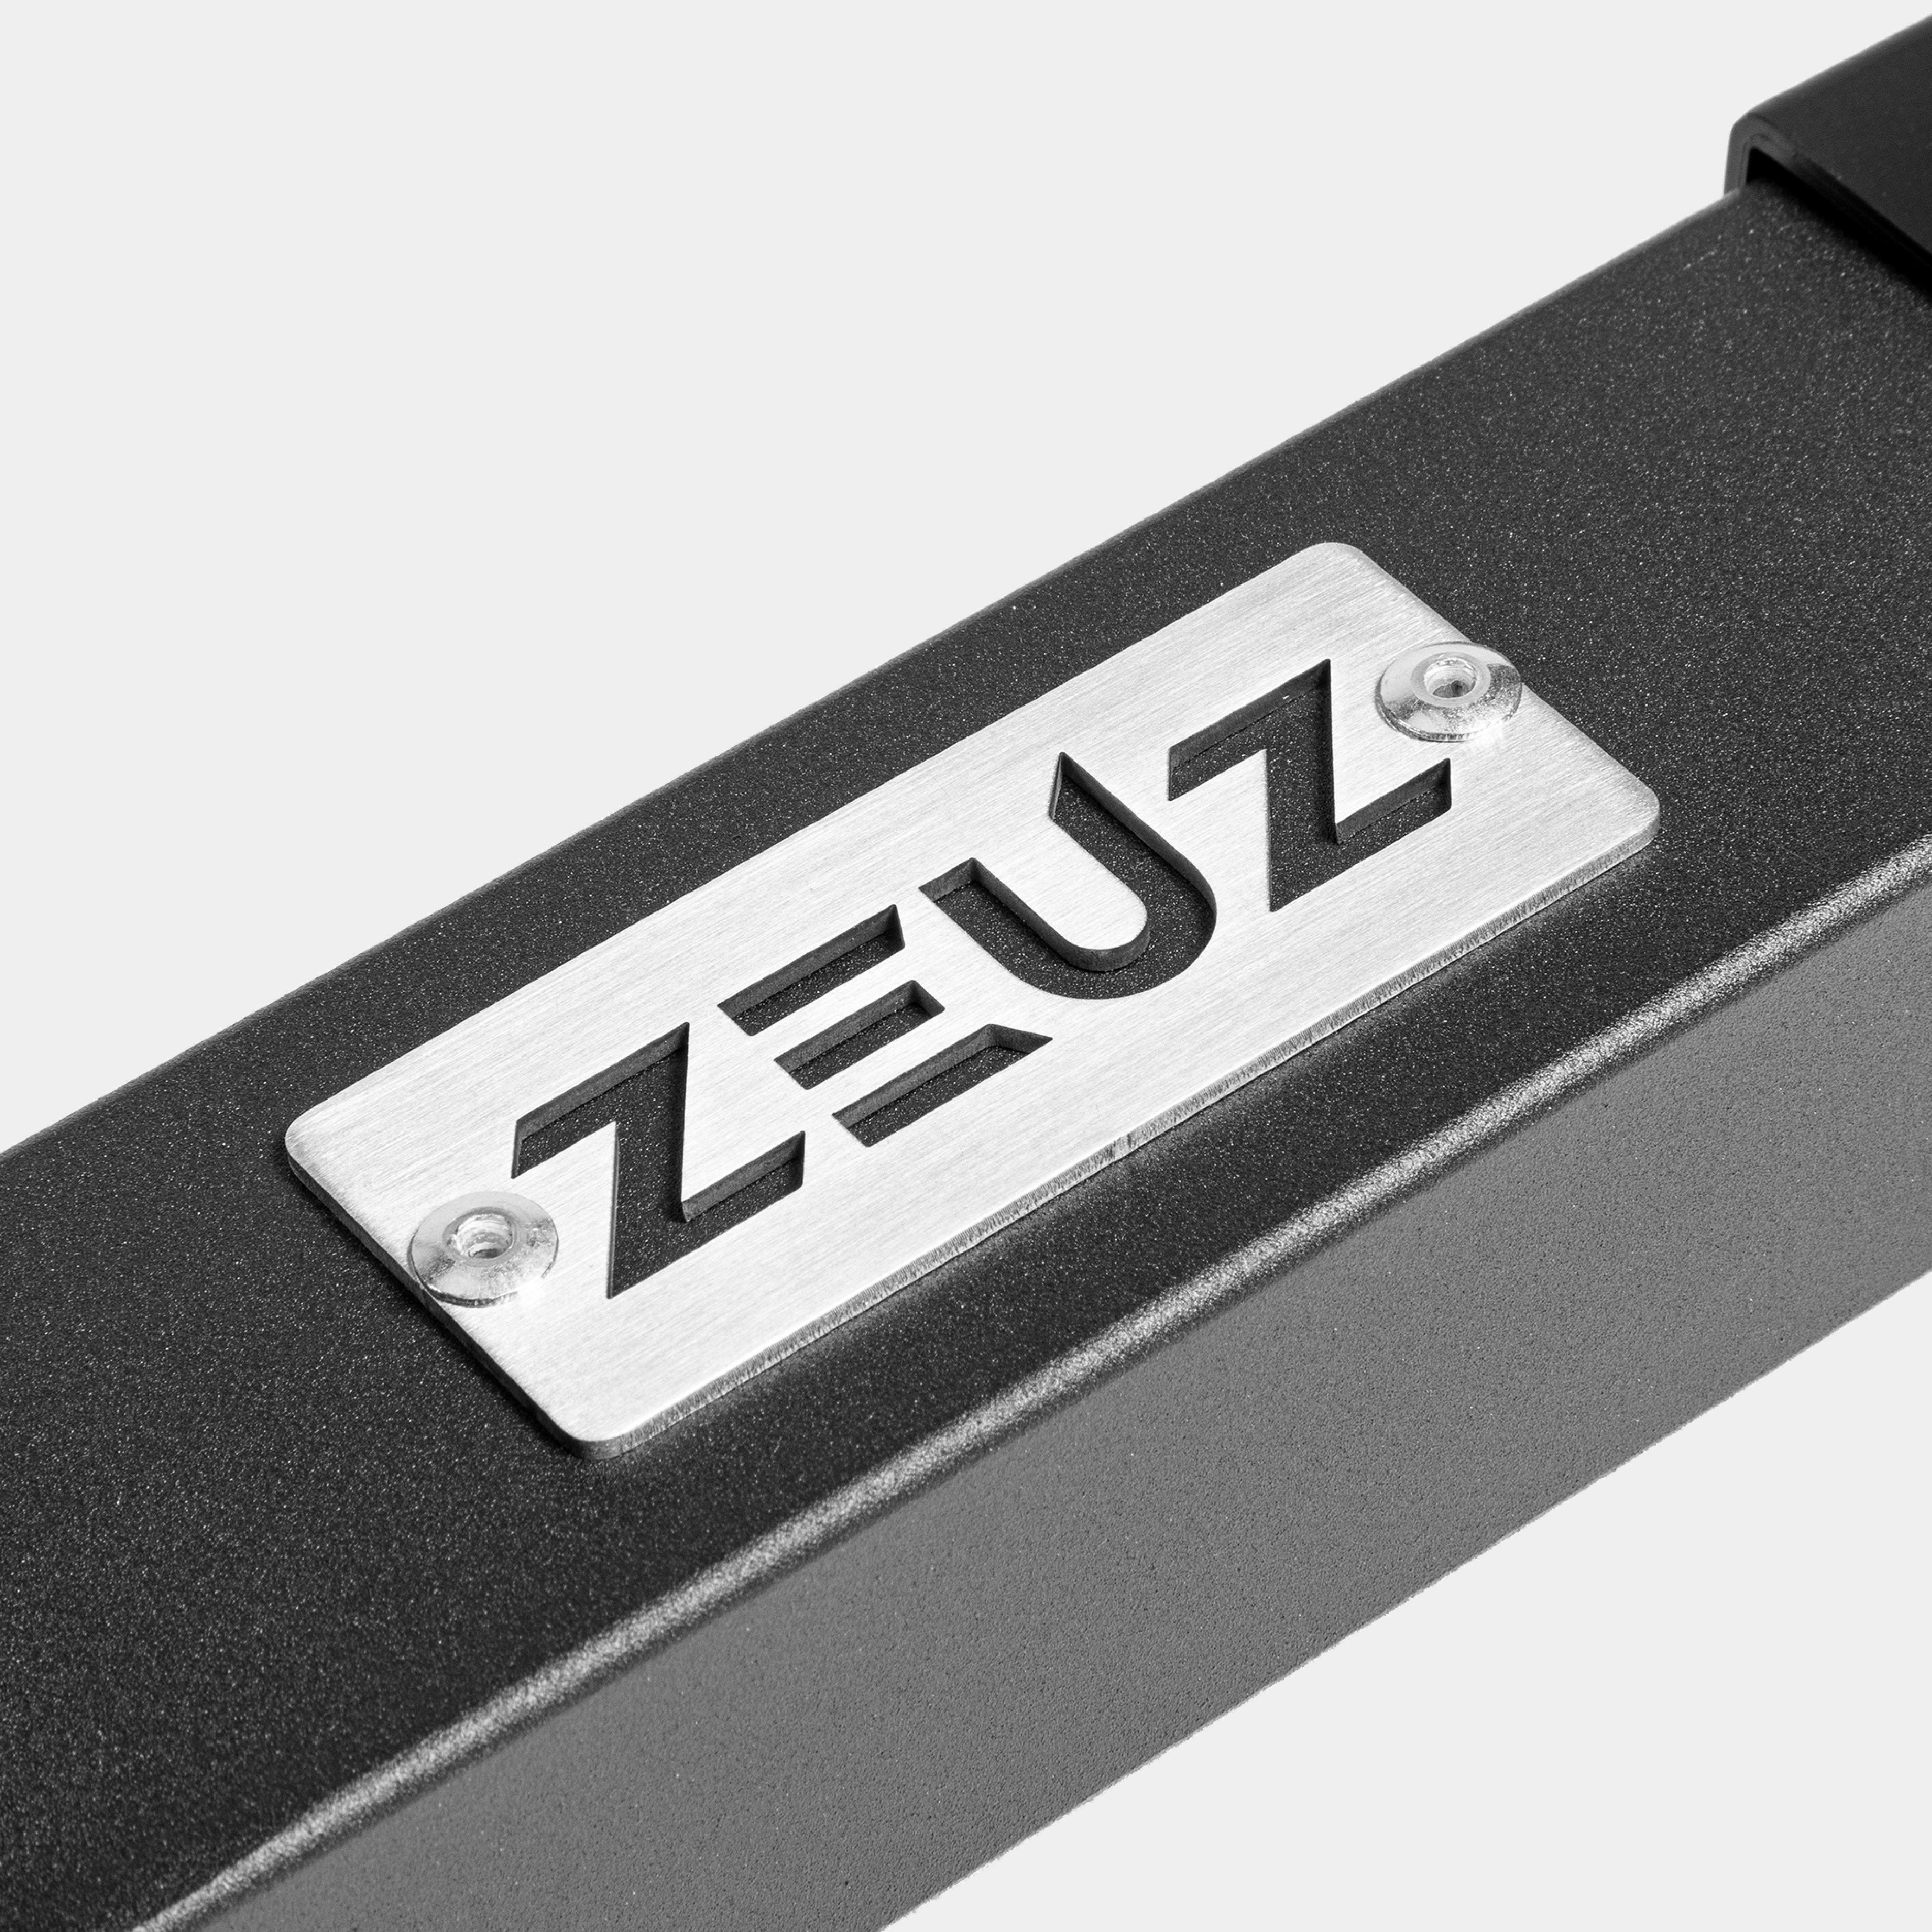 ZEUZ Adjustable Metal XL Parallettes